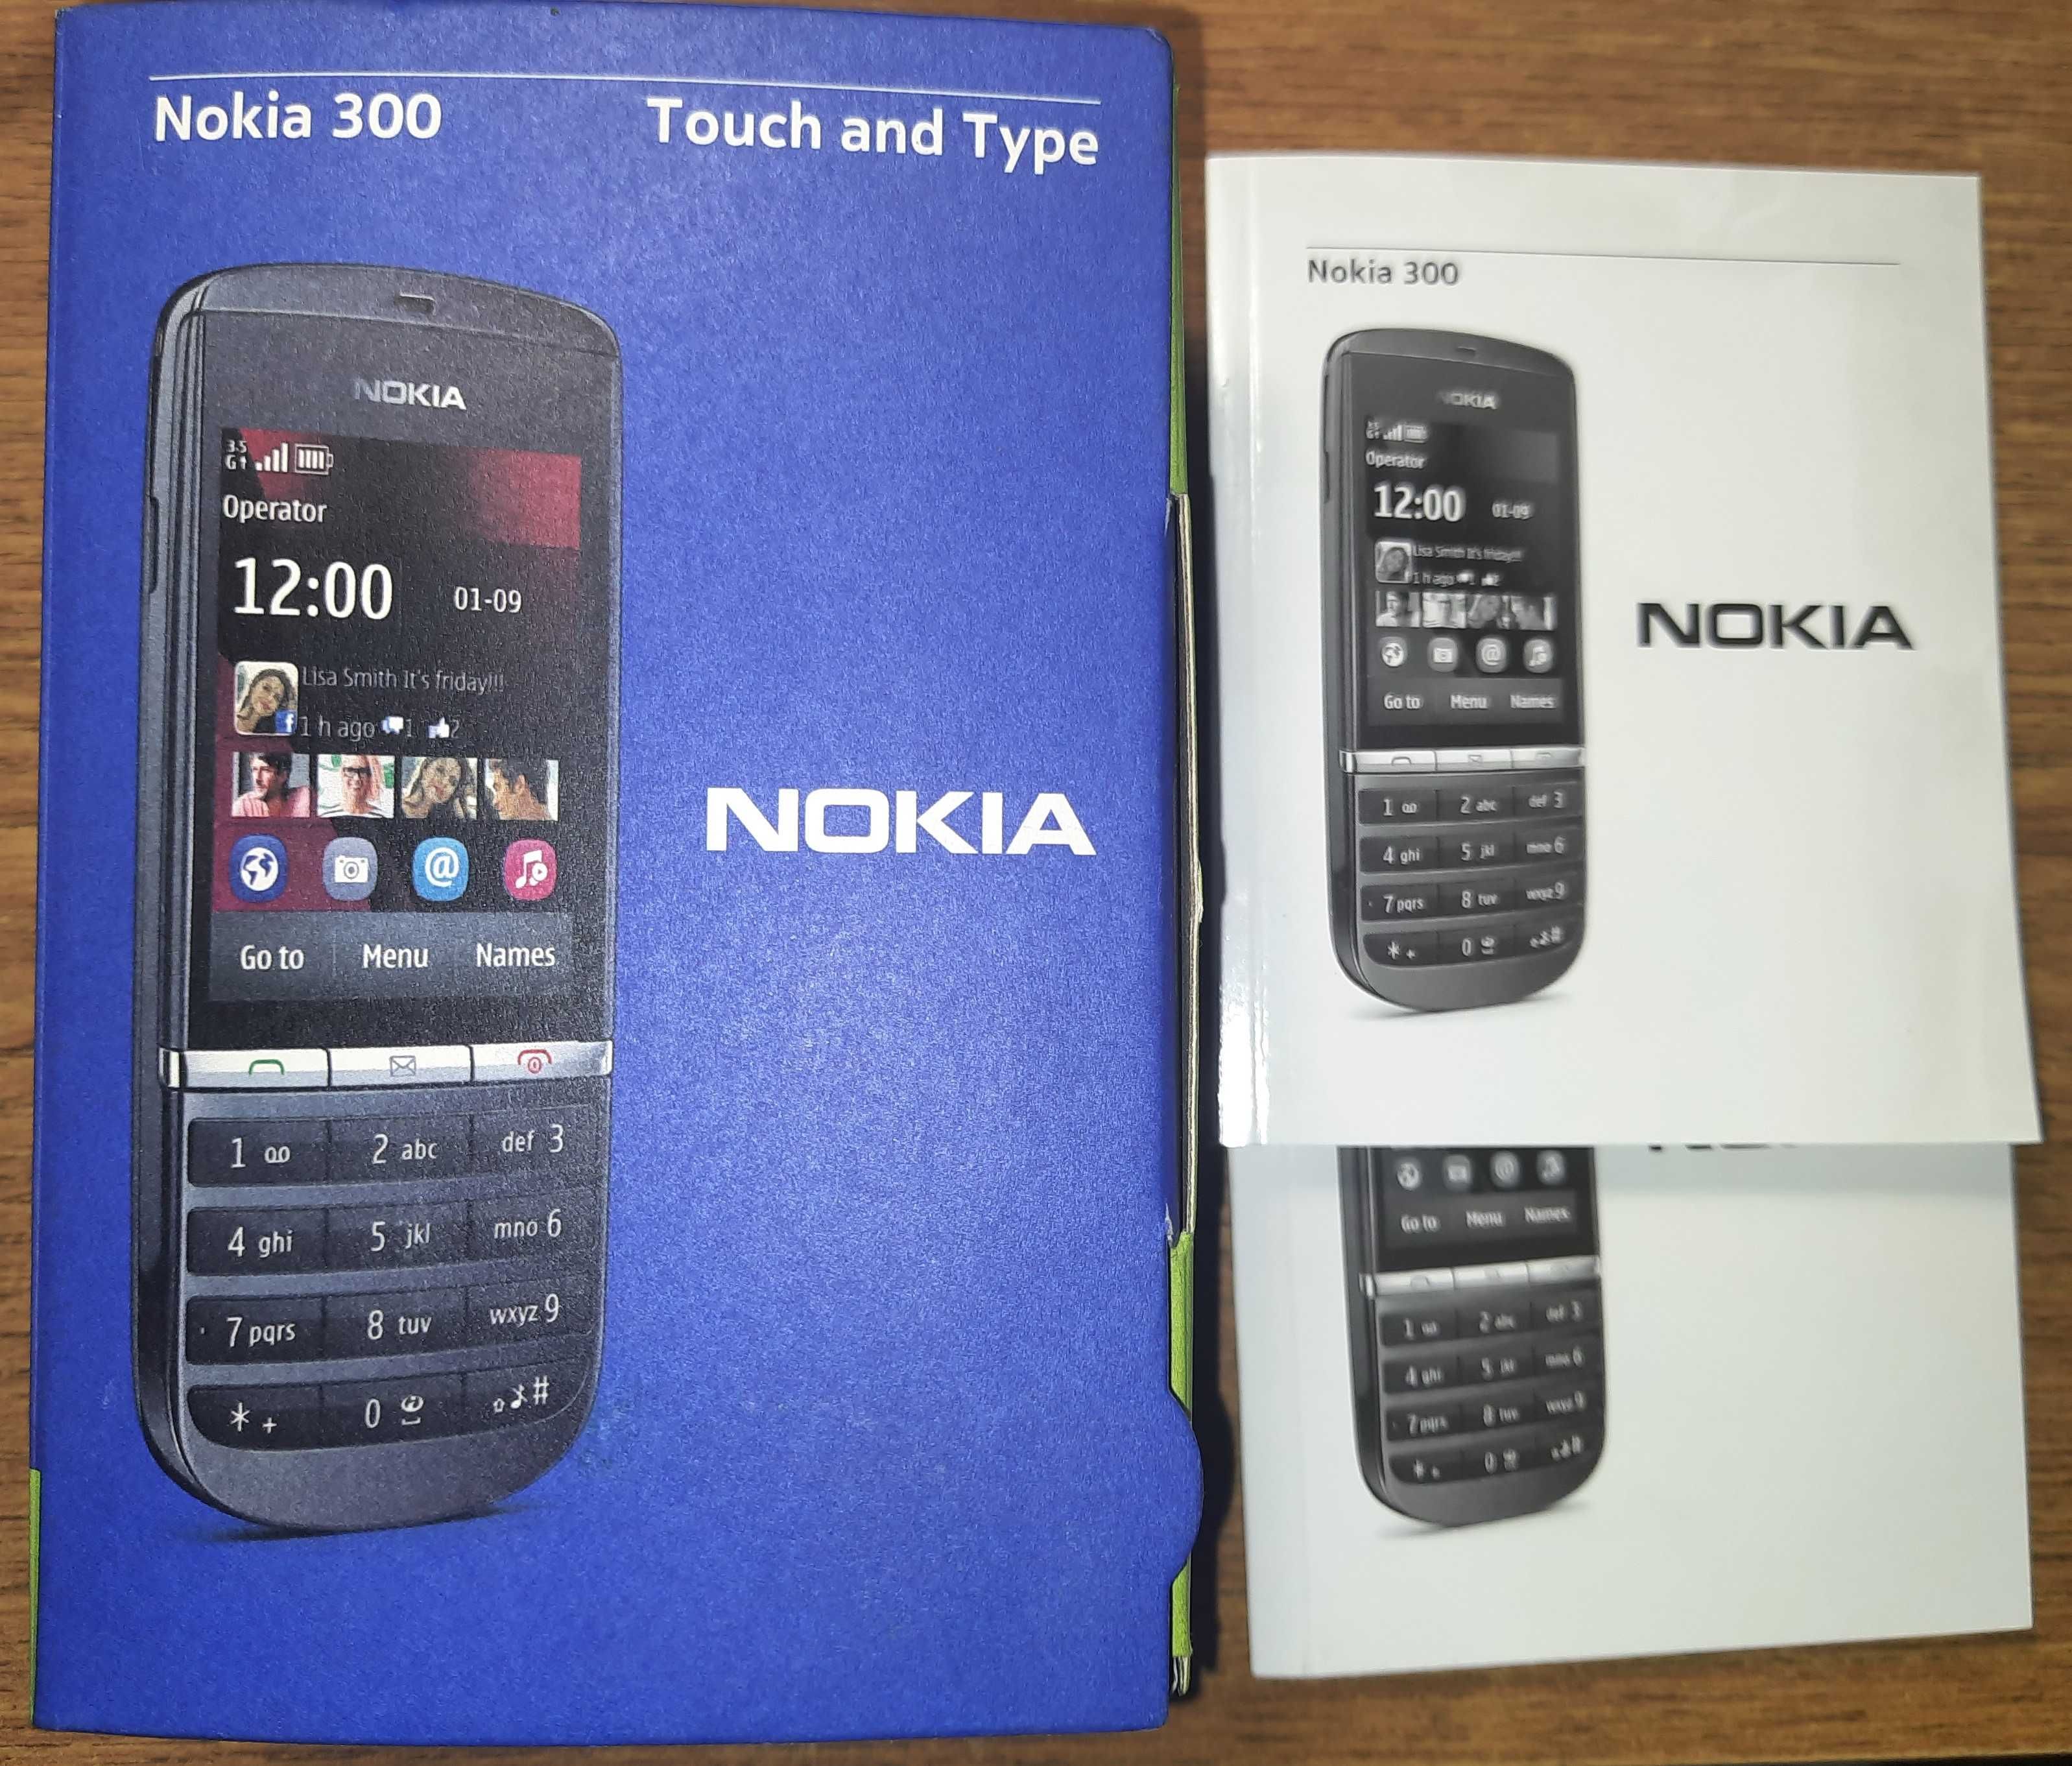 Мобільний телефон Nokia Asha 300